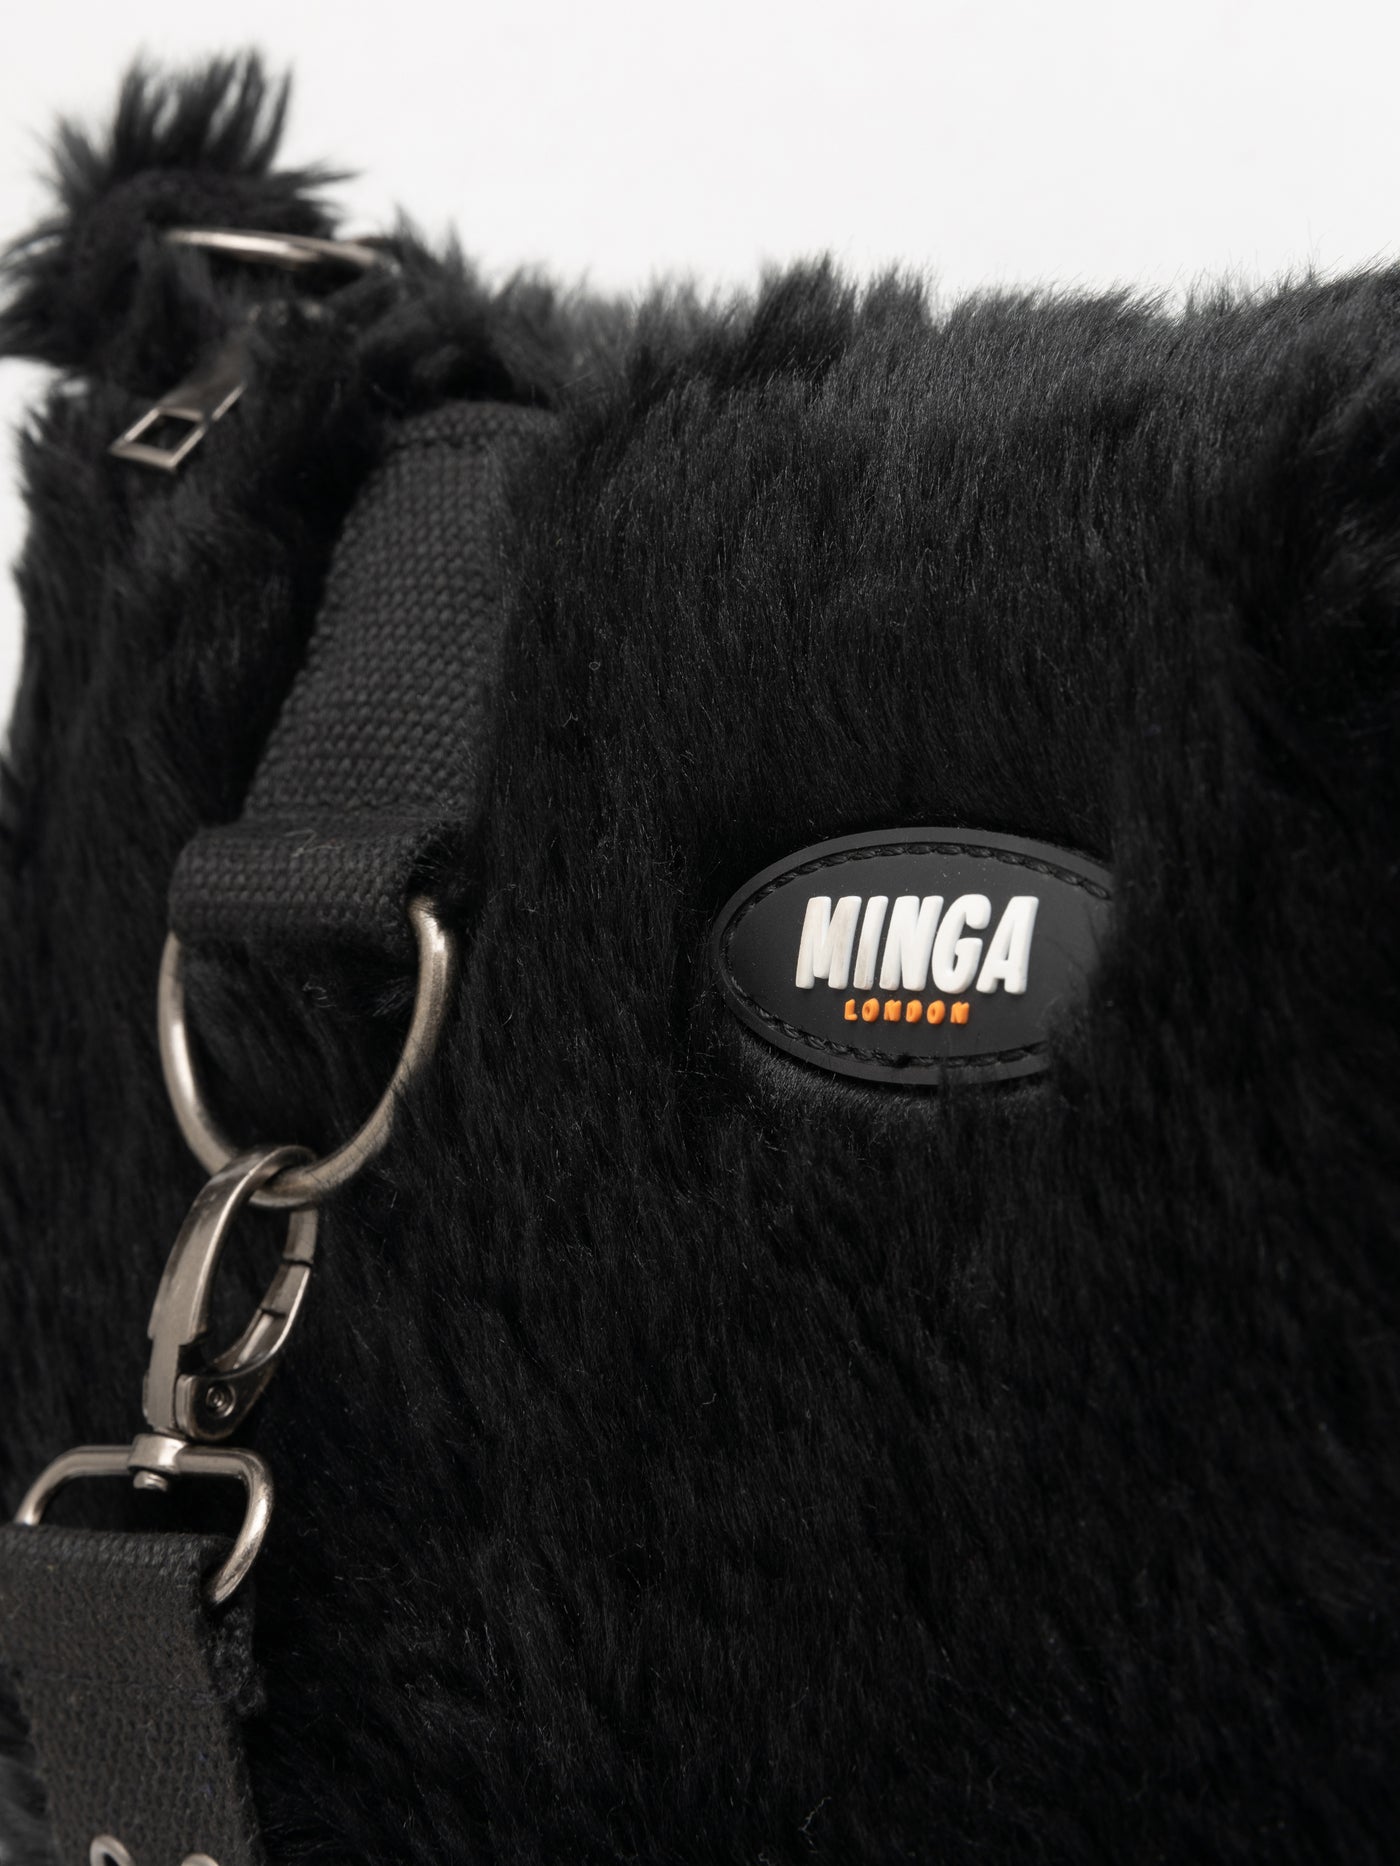 Arrya Black Furry Shoulder Chain Bag